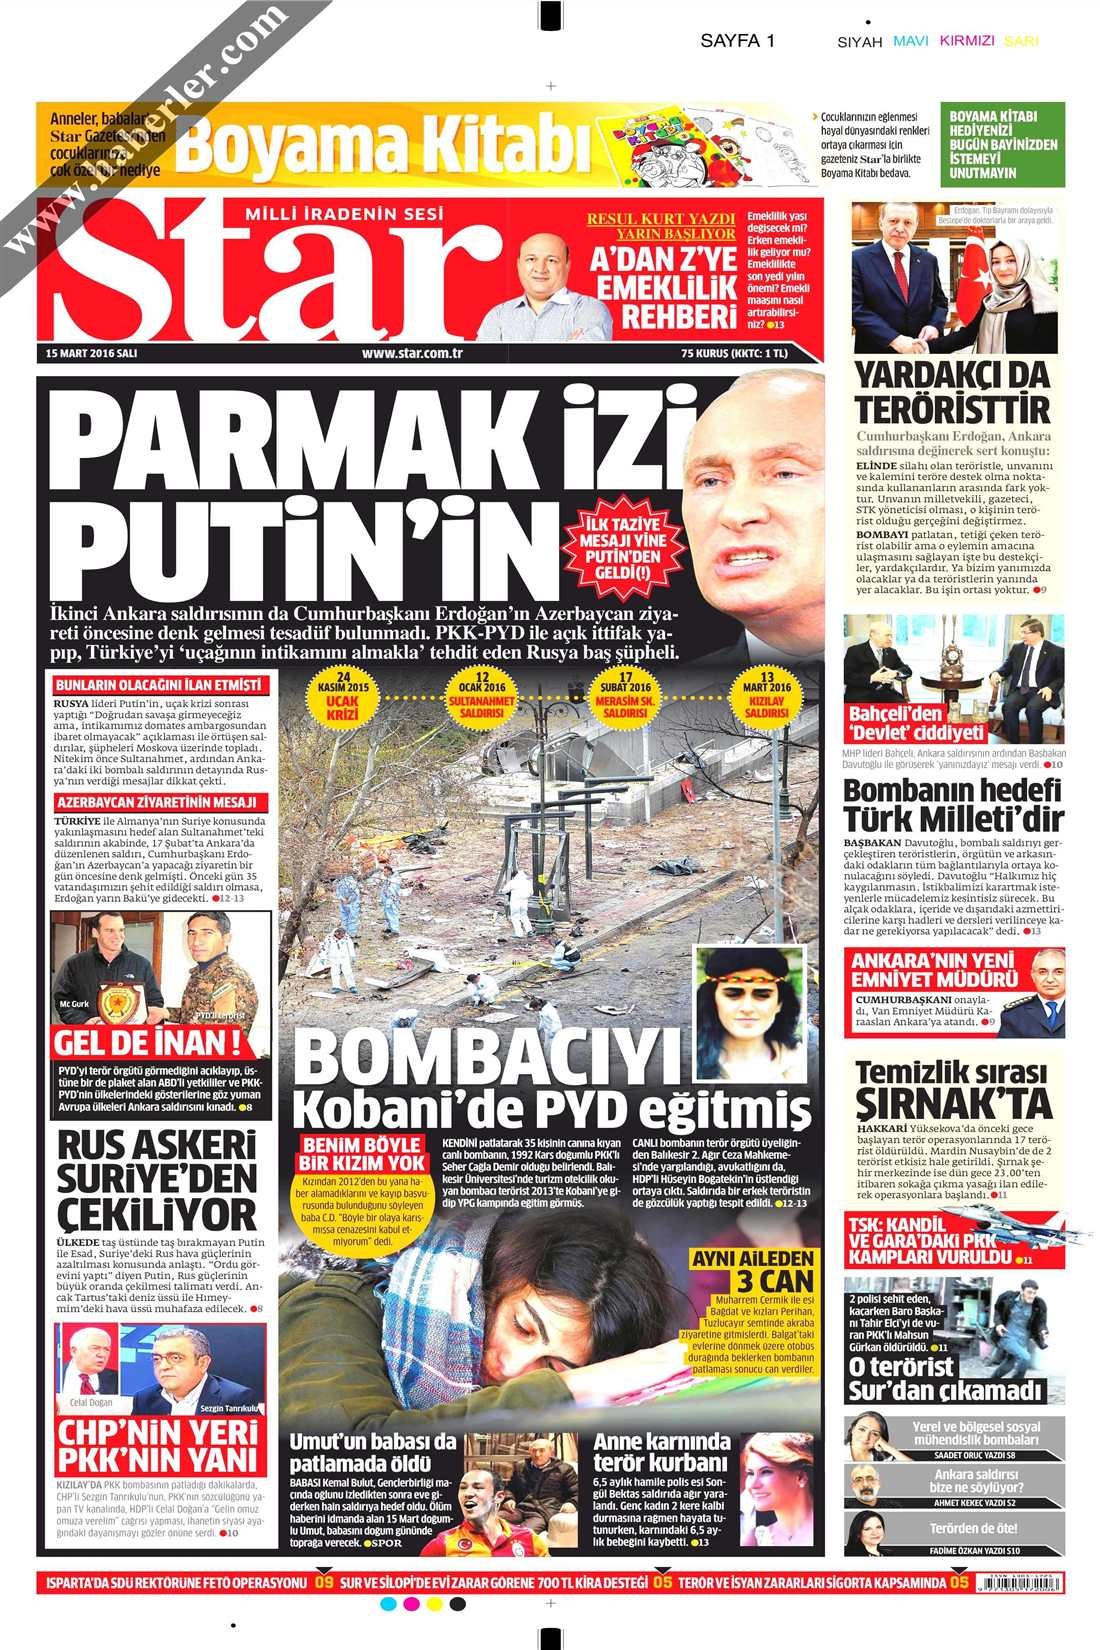 Star'ın Rusya'yla ilgili 6 ay arayla attığı 2 manşet pes dedirtti!